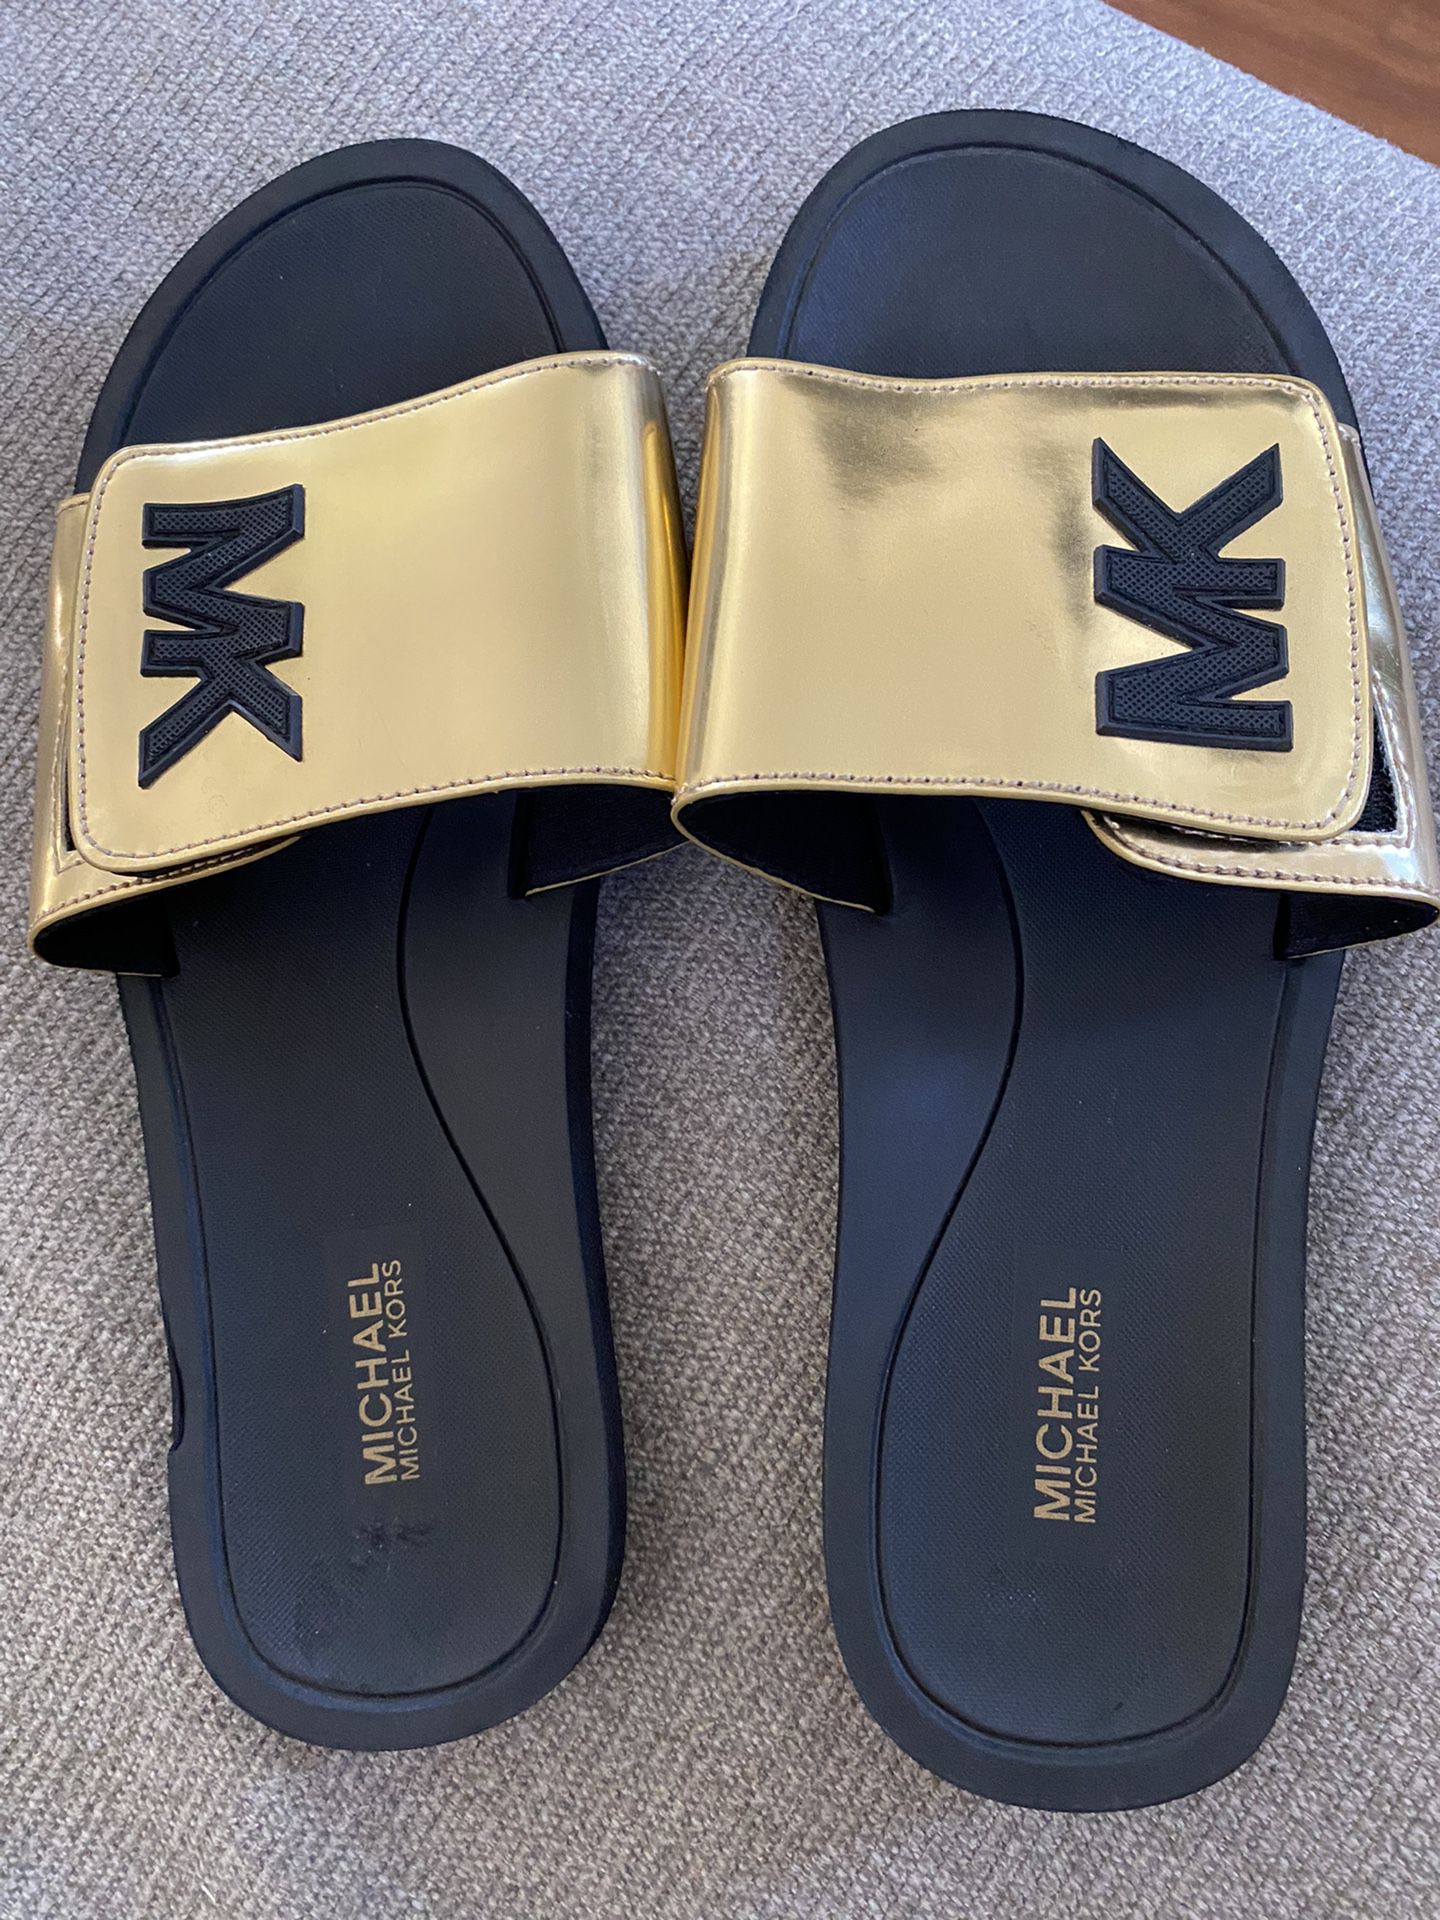 Michael Kors Sandals Size 7